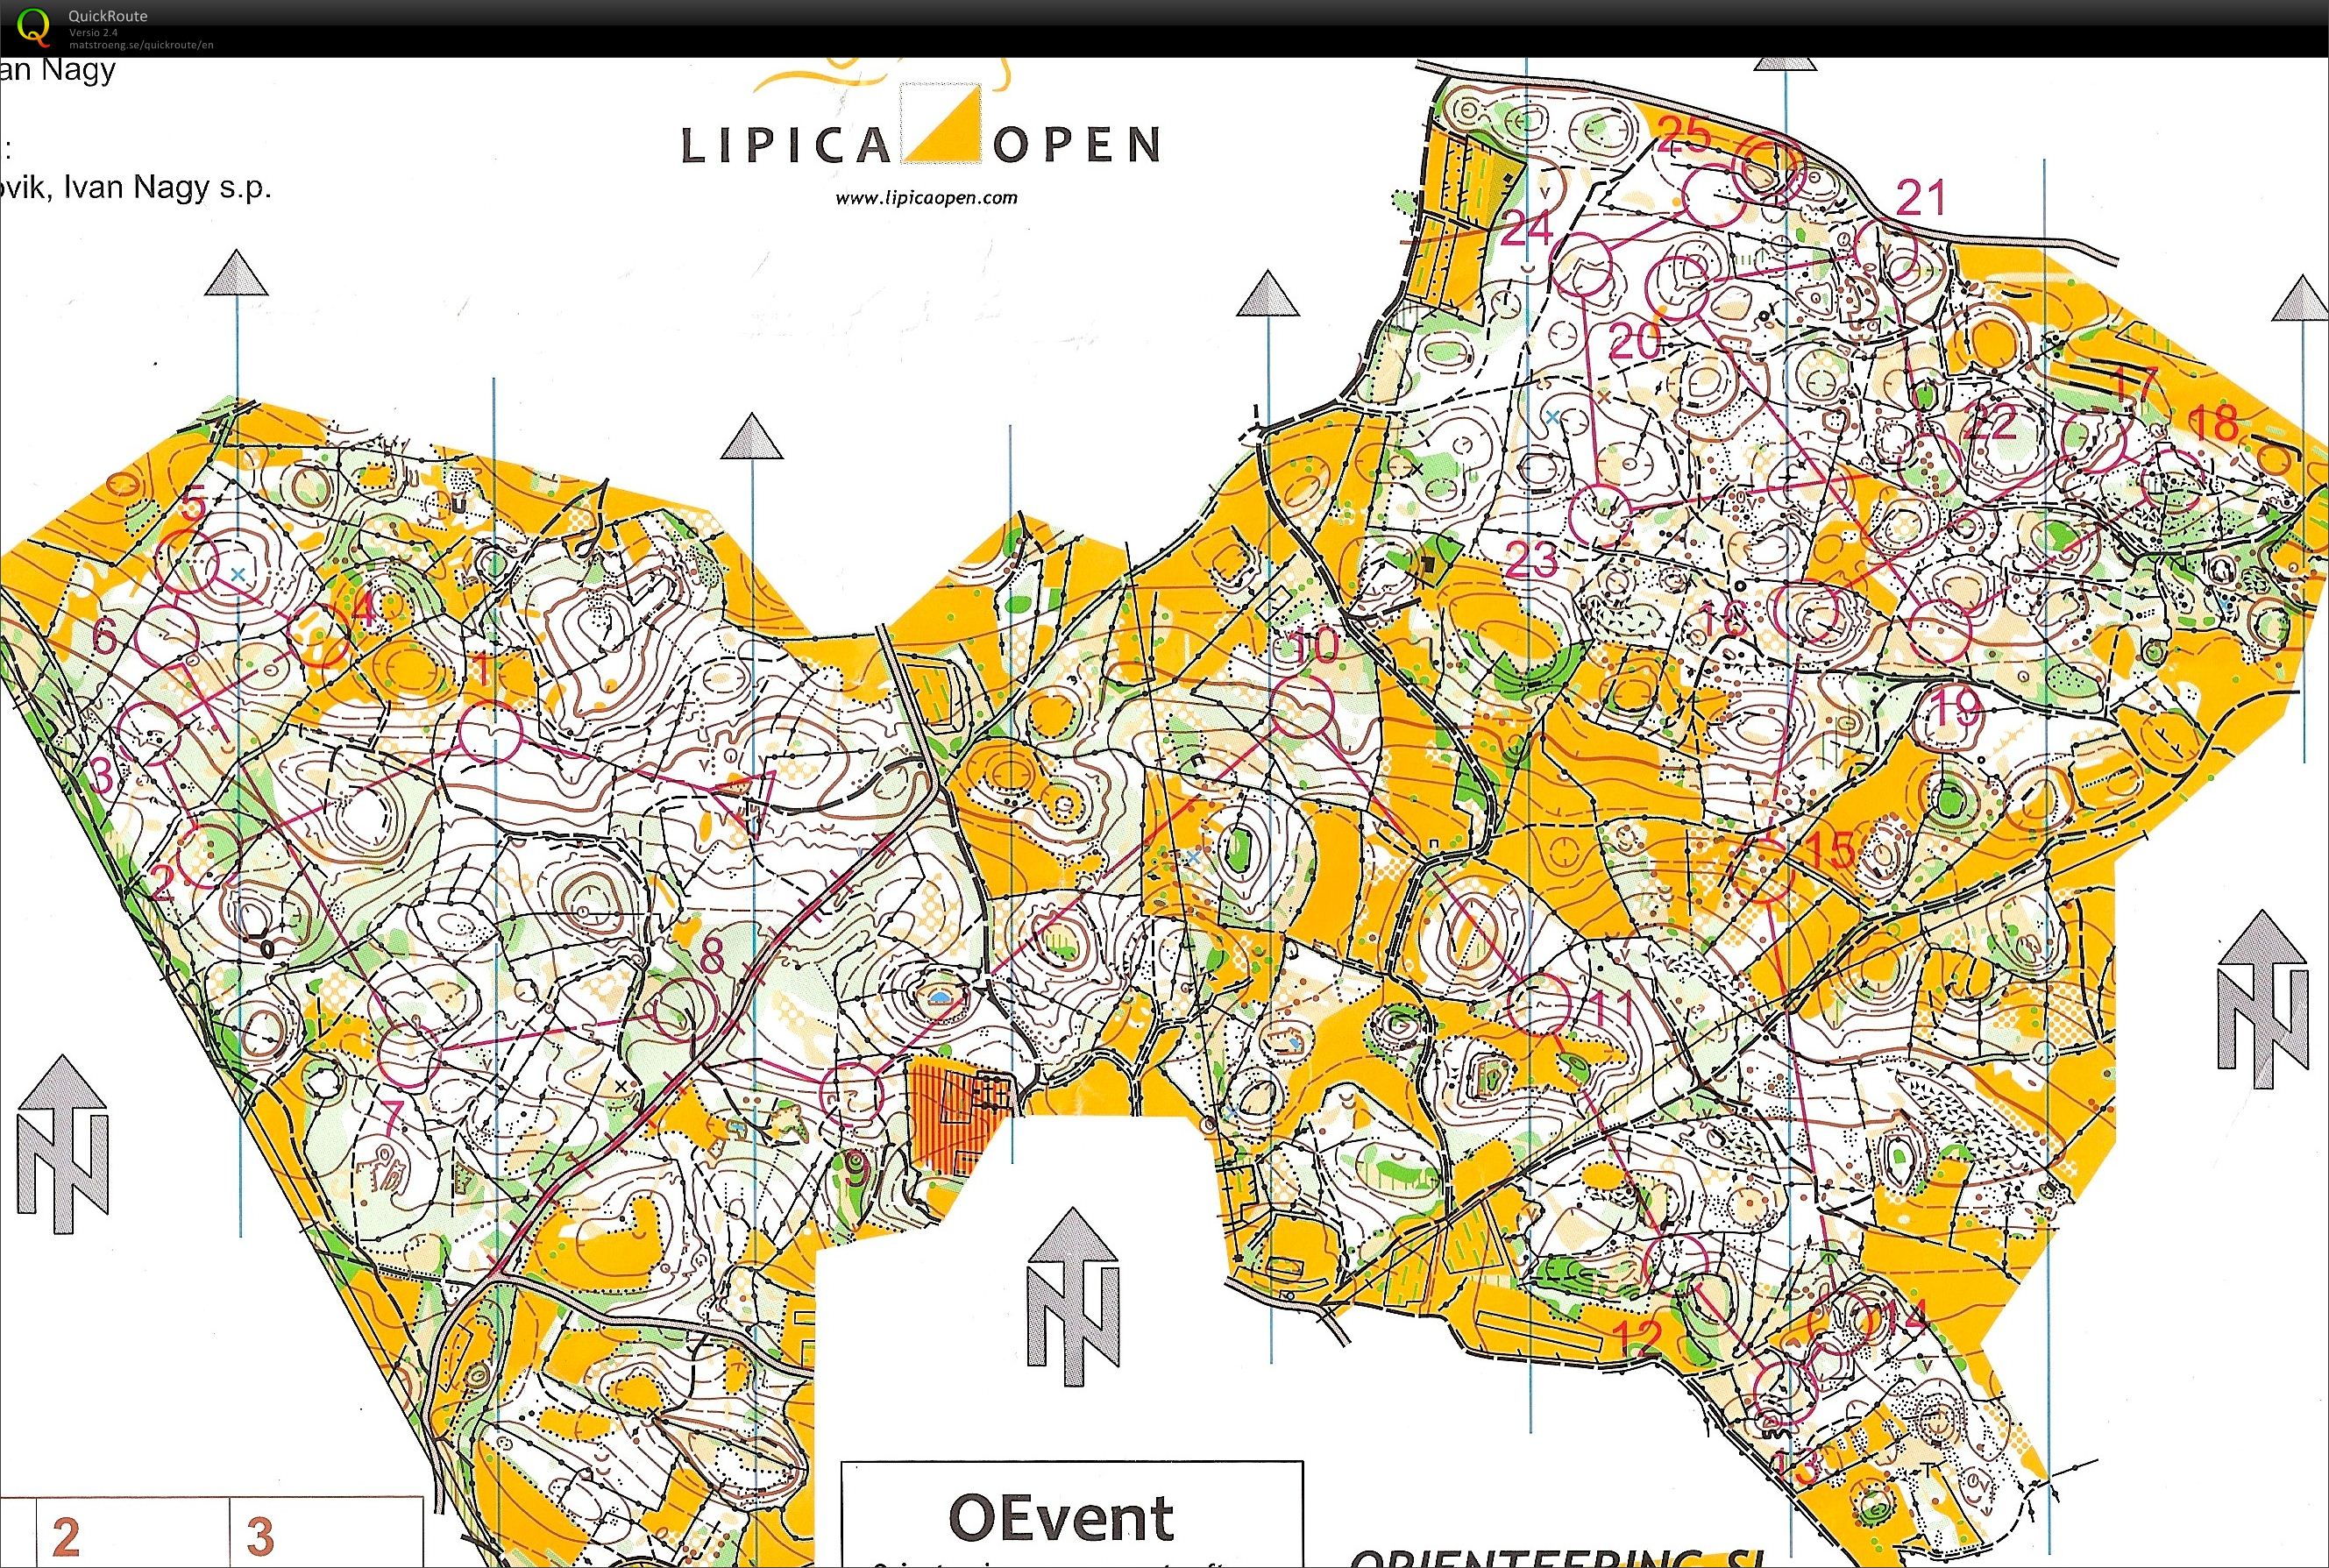 Lipica Open 1. päivä (2012-03-10)